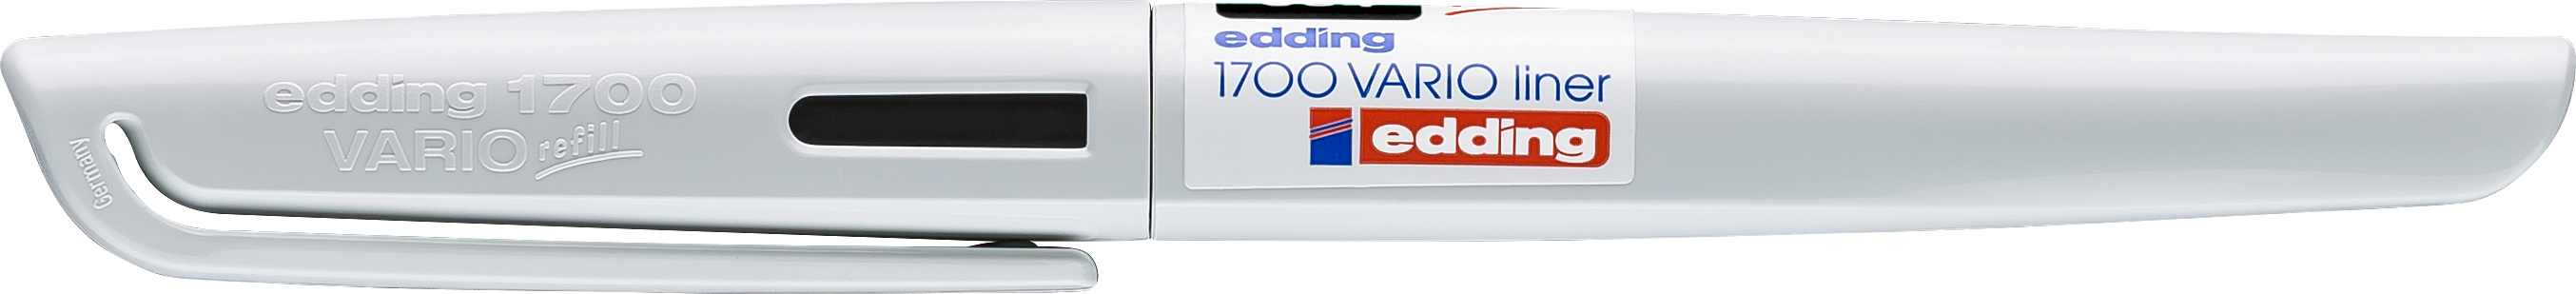 EDDING Fineliner 1700 0.5mm 1700V-1 noir